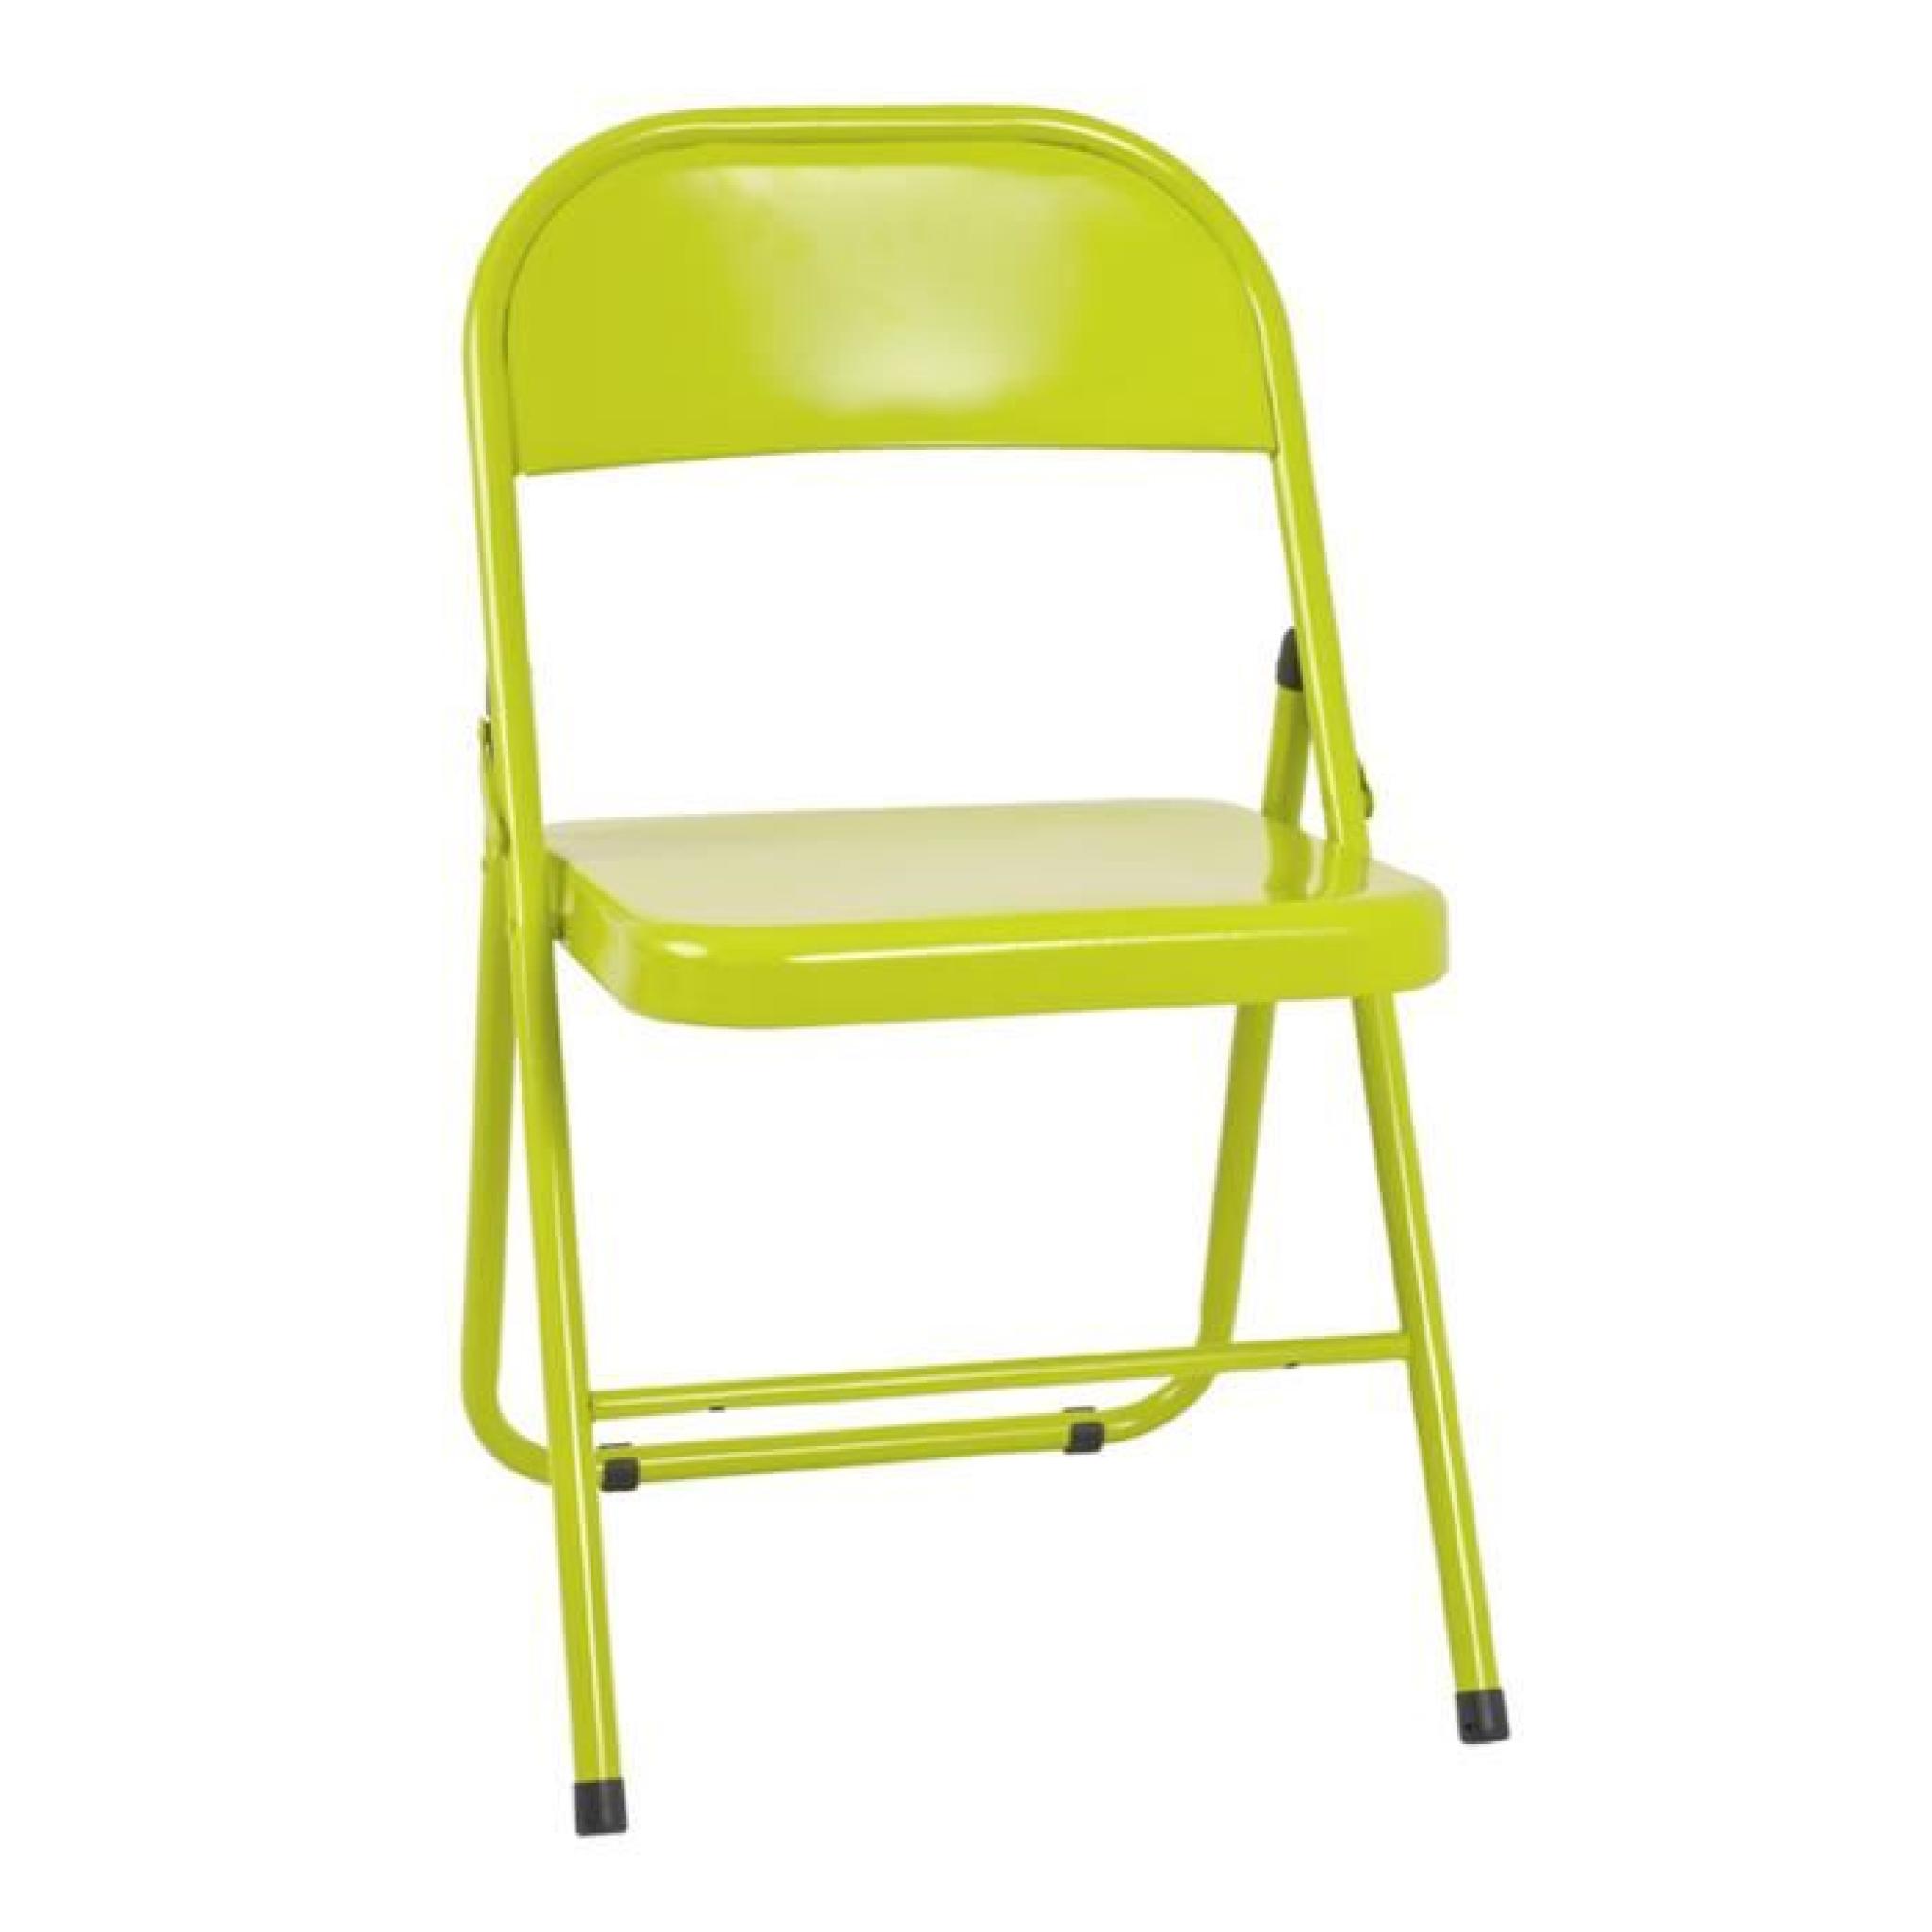 Chaise pliante en métal vert, L47 x H78 x P46 cm